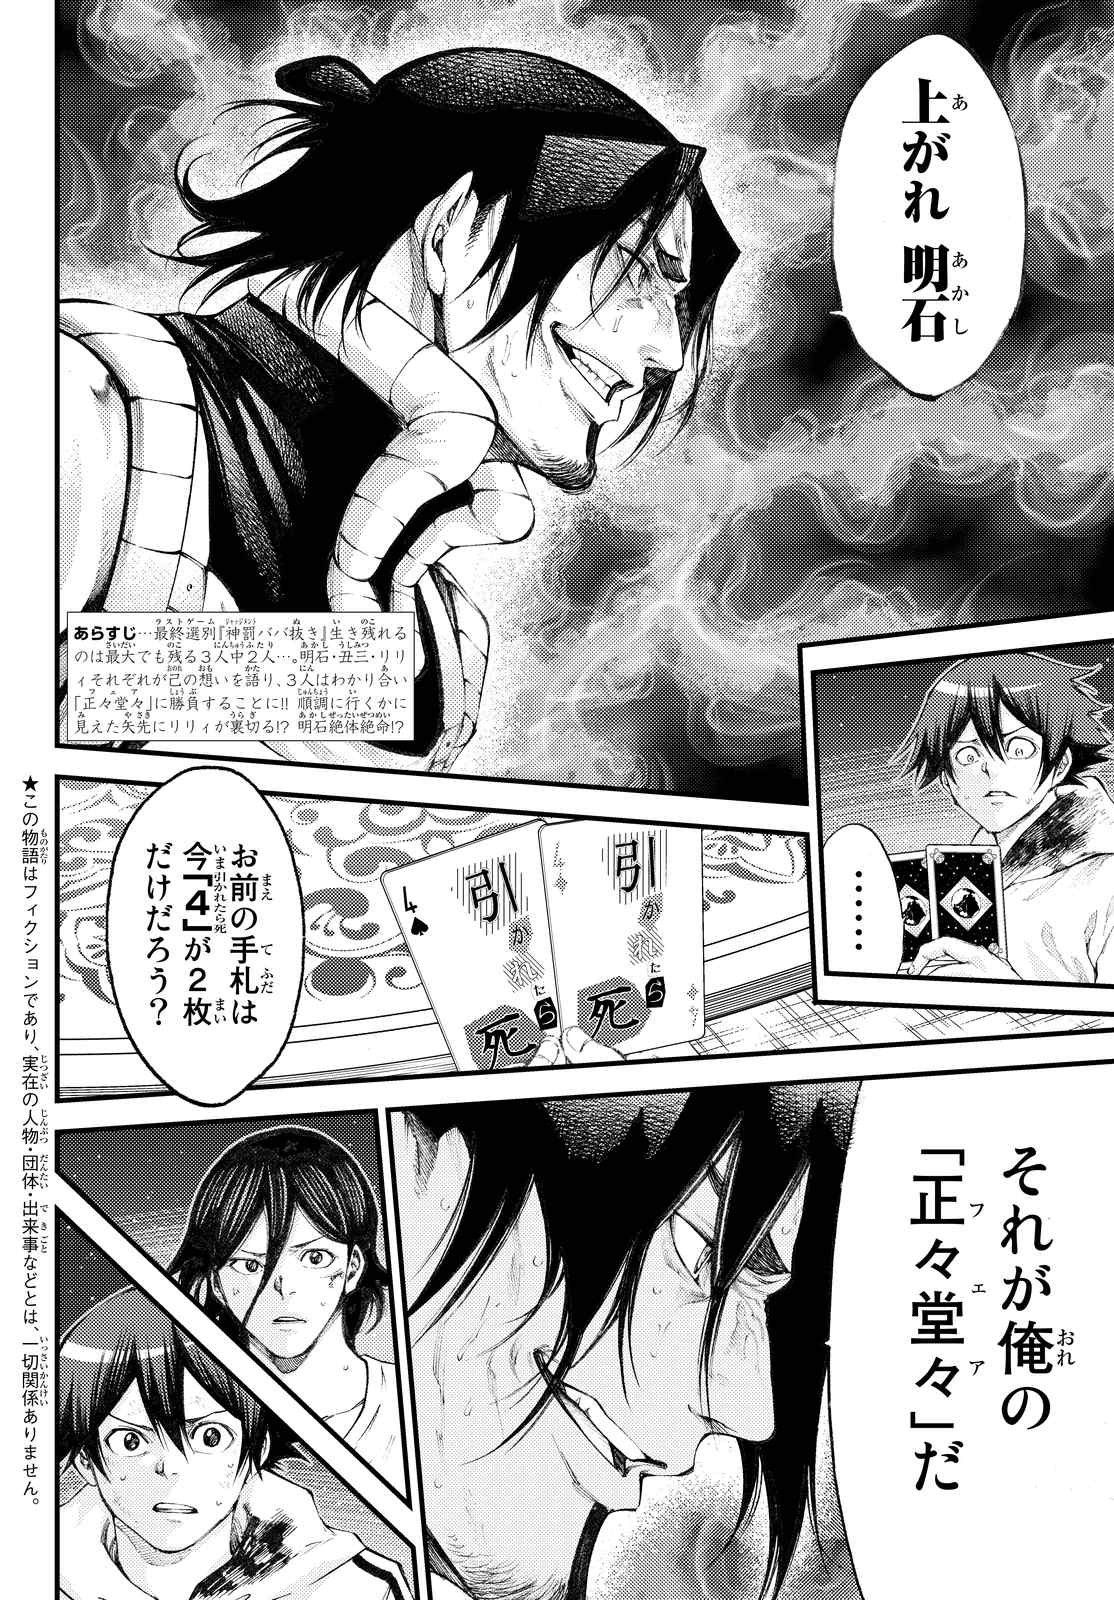 Kamisama no Ituori - Chapter 177 - Page 2